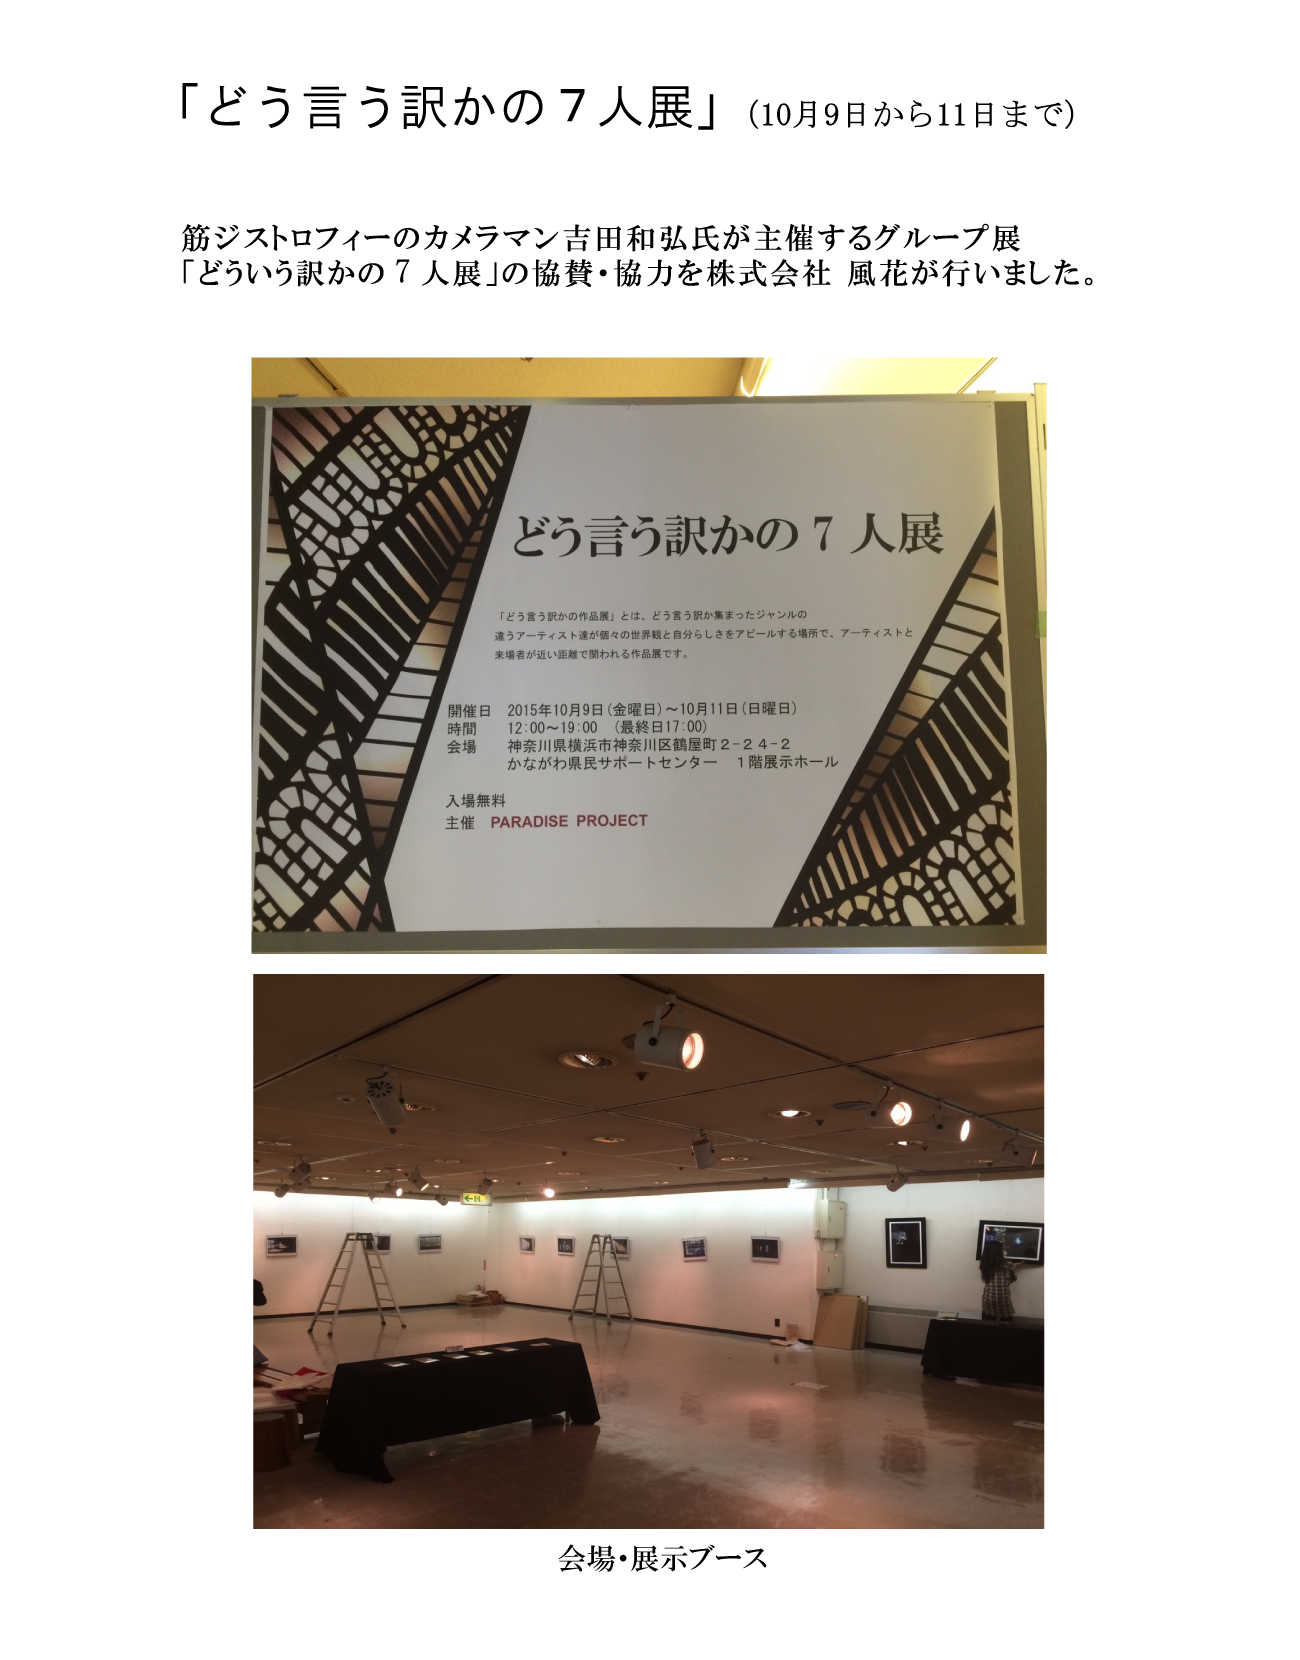 筋ジストロフィーのカメラマン吉田和弘氏のグループ展｢どう言う訳かの7人展｣の協賛・協力を株式会社風花が行います。